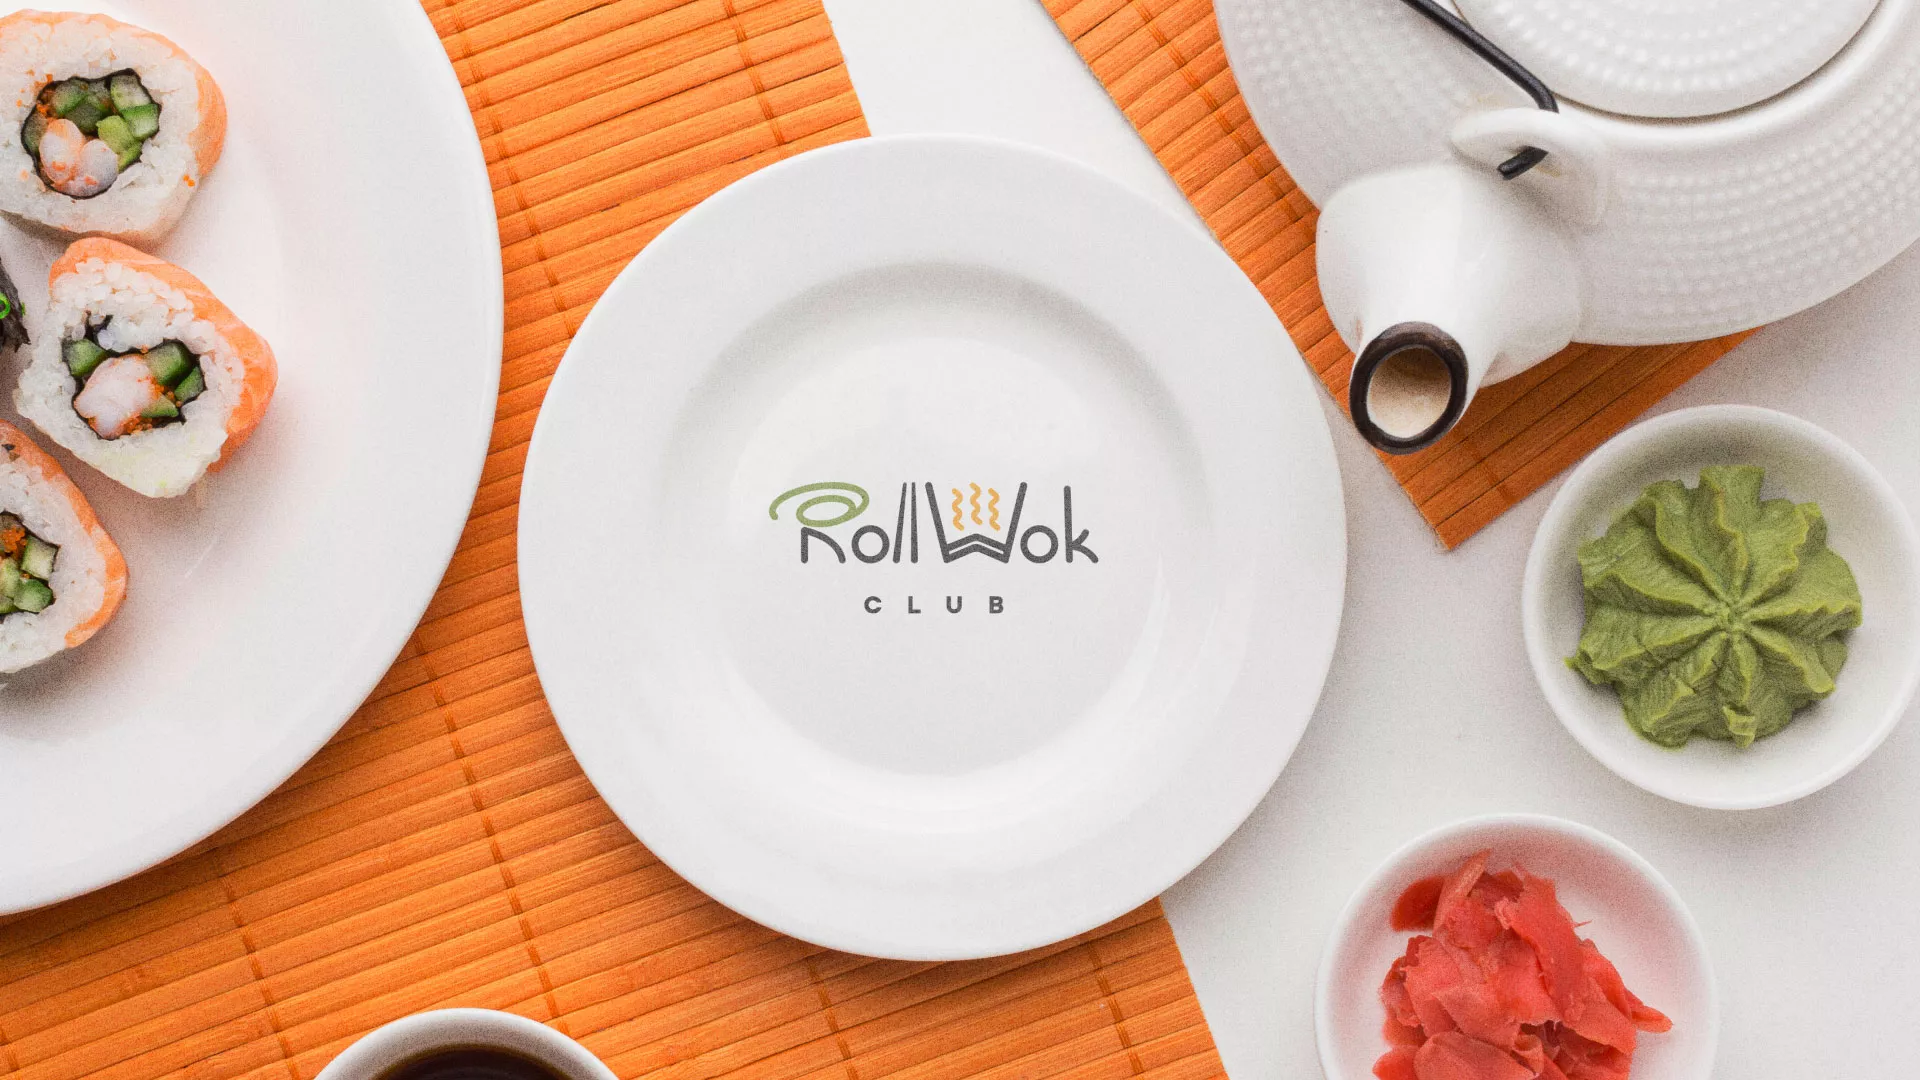 Разработка логотипа и фирменного стиля суши-бара «Roll Wok Club» в Ноябрьске